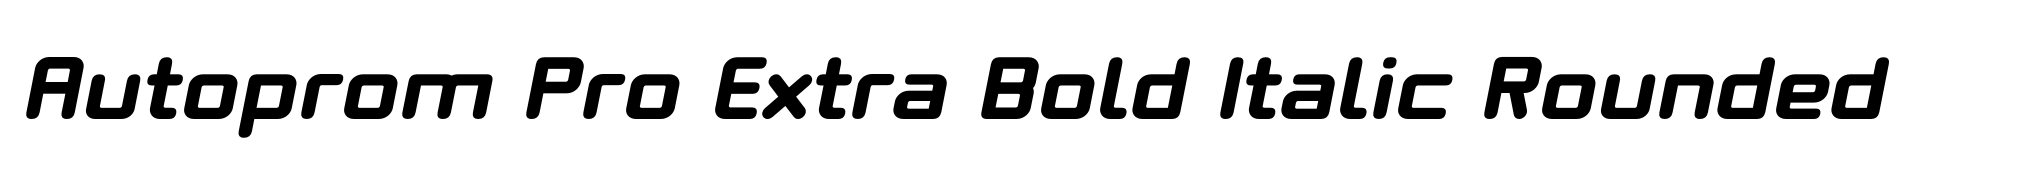 Autoprom Pro Extra Bold Italic Rounded image